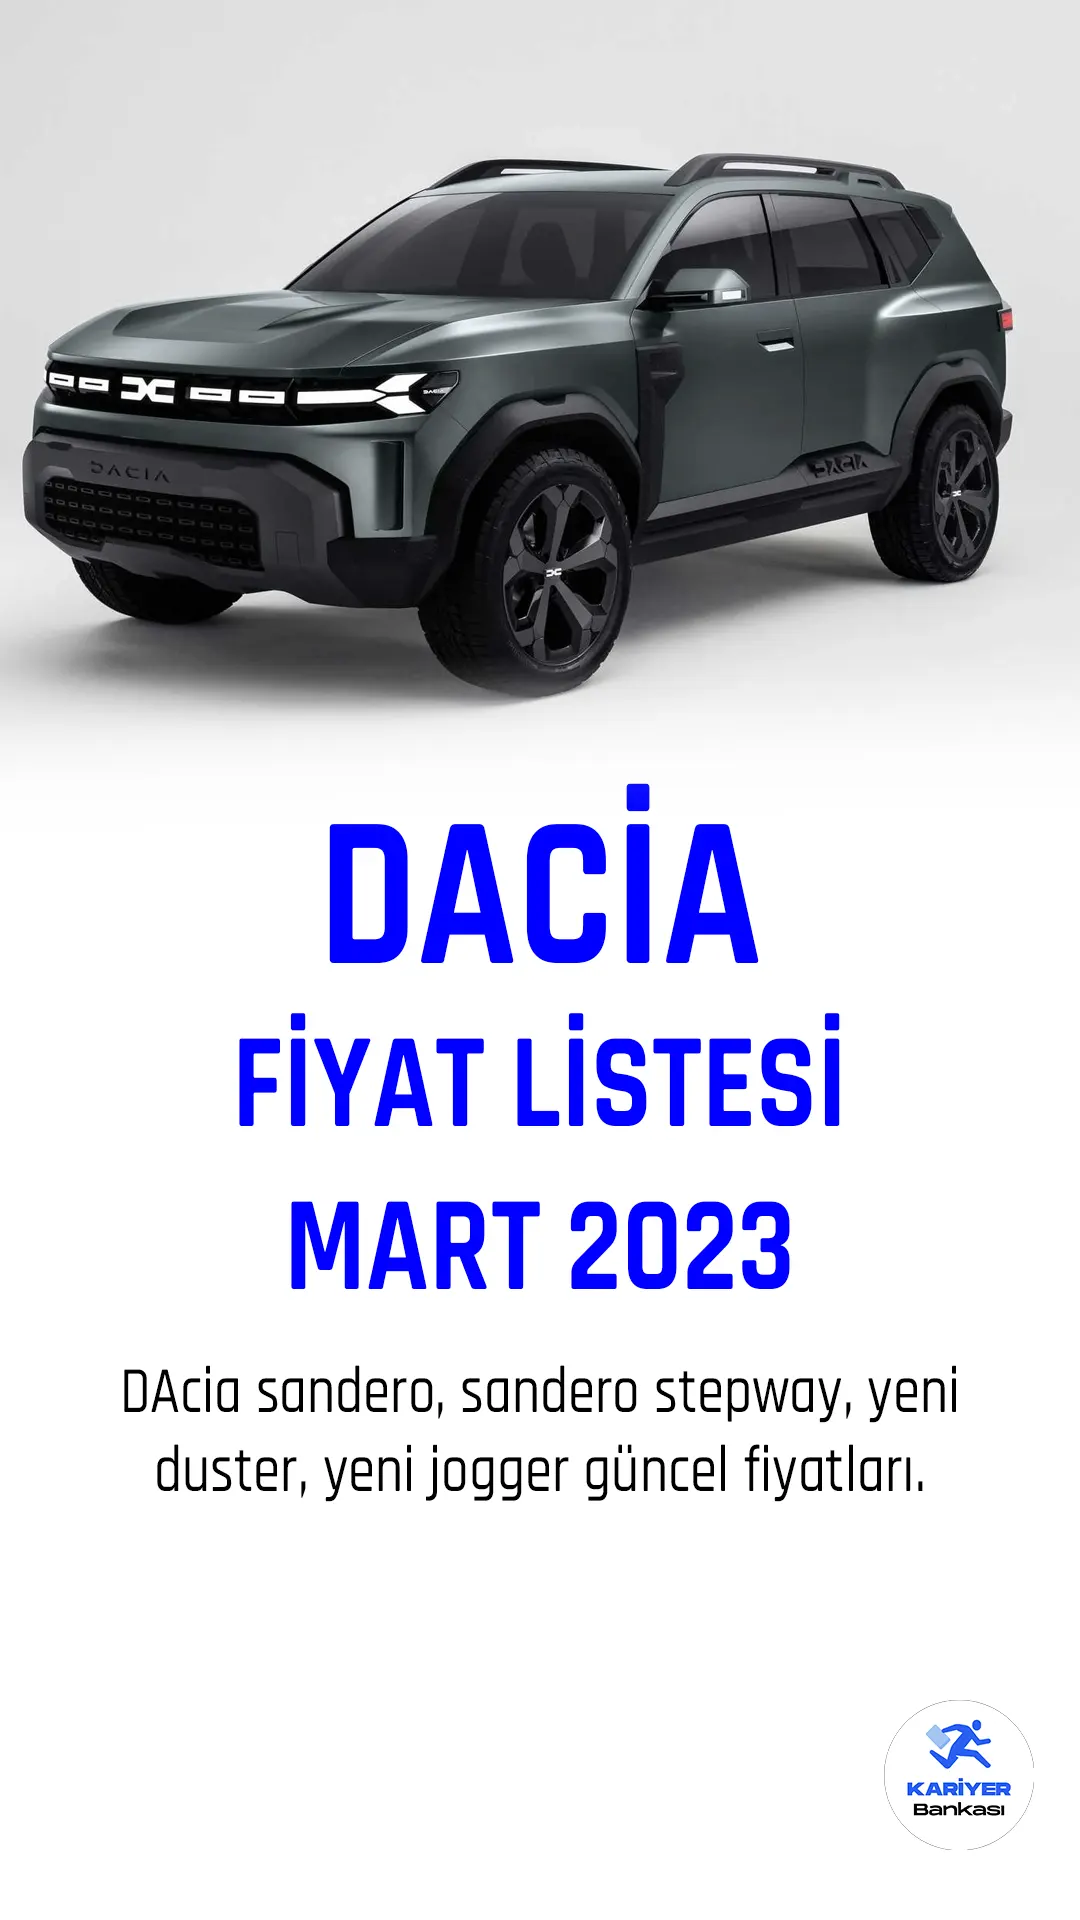 Dacia Mart 2023 fiyat listesi yayımlandı! Türkiye'de son yıllarda oldukça popüler olan araç markalarından biri de Dacia'dır. Ünlü marka her ay fiyat listelerini güncellemeye devam ediyor.Dacia, Romanya'nın en büyük otomobil üreticisidir ve Renault Grubu'nun bir parçasıdır. Dacia, dünya genelindeki müşterilere uygun fiyatlı, dayanıklı ve verimli araçlar sunmak için çalışmaktadır.